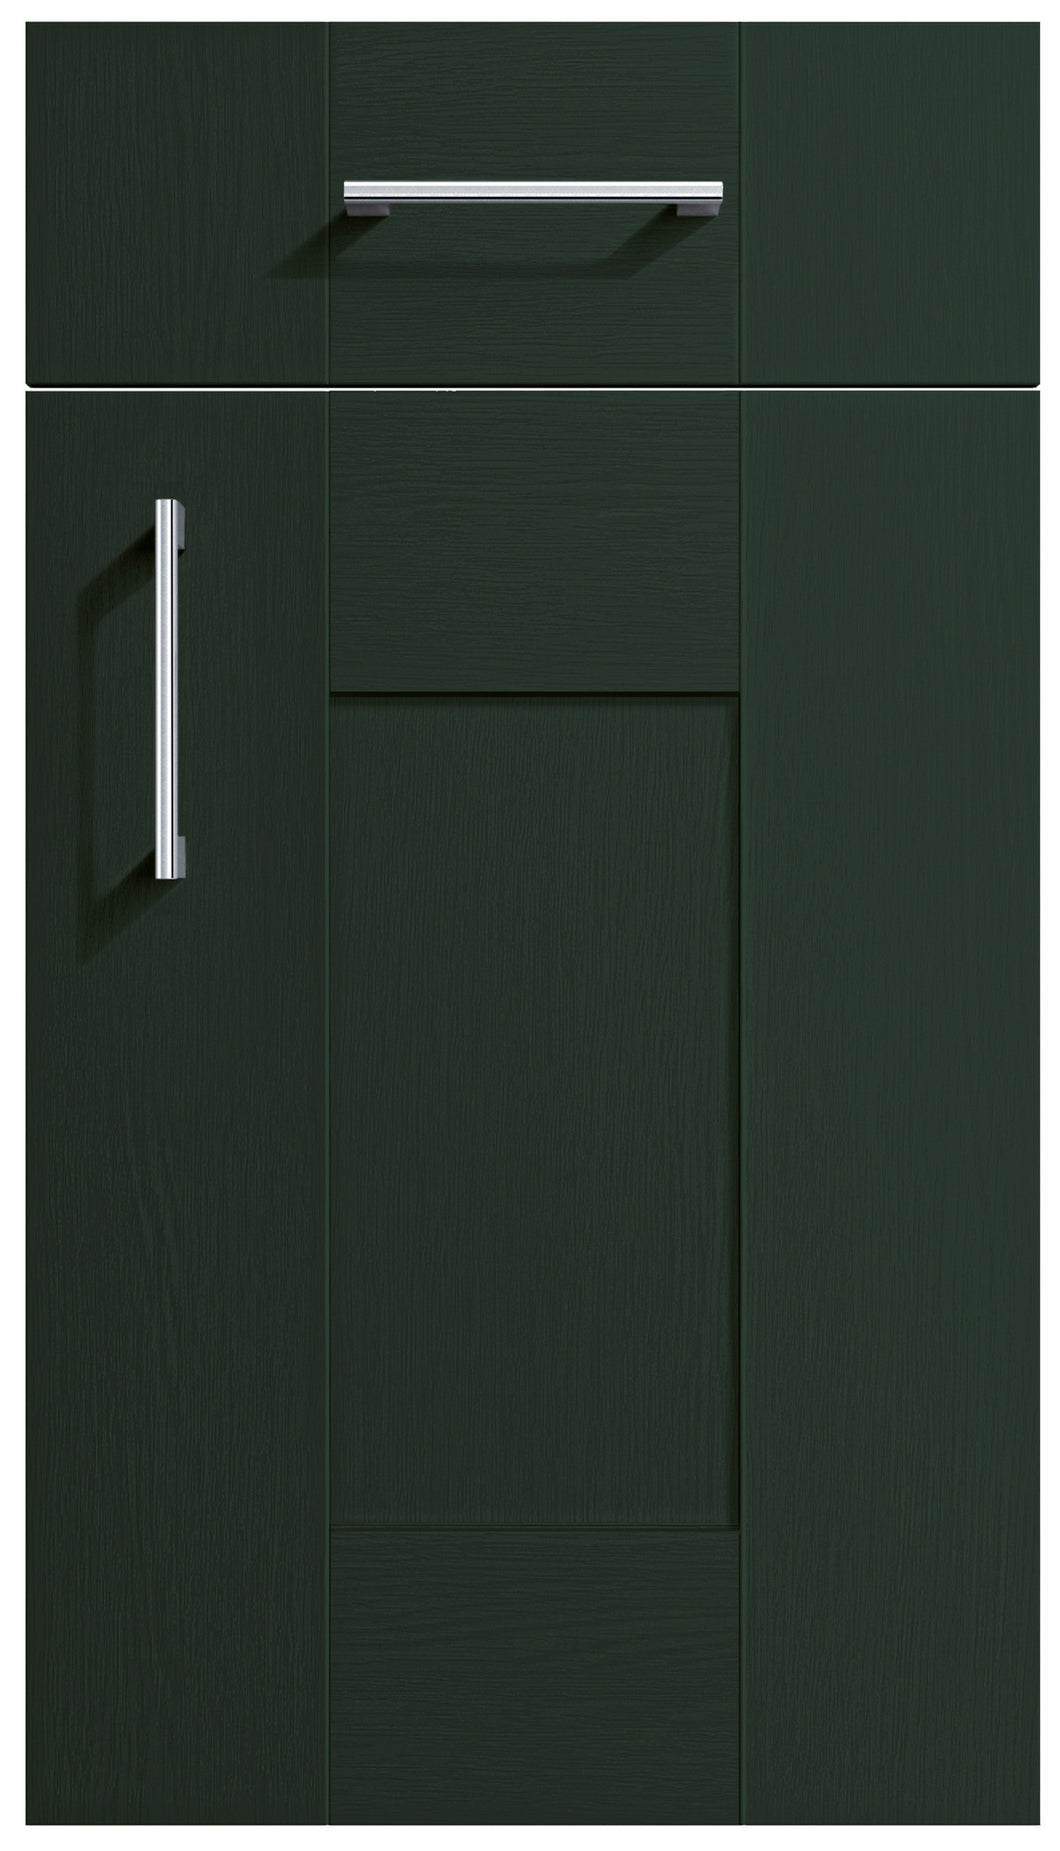 Cartmel Fir Green Shaker Kitchen Doors